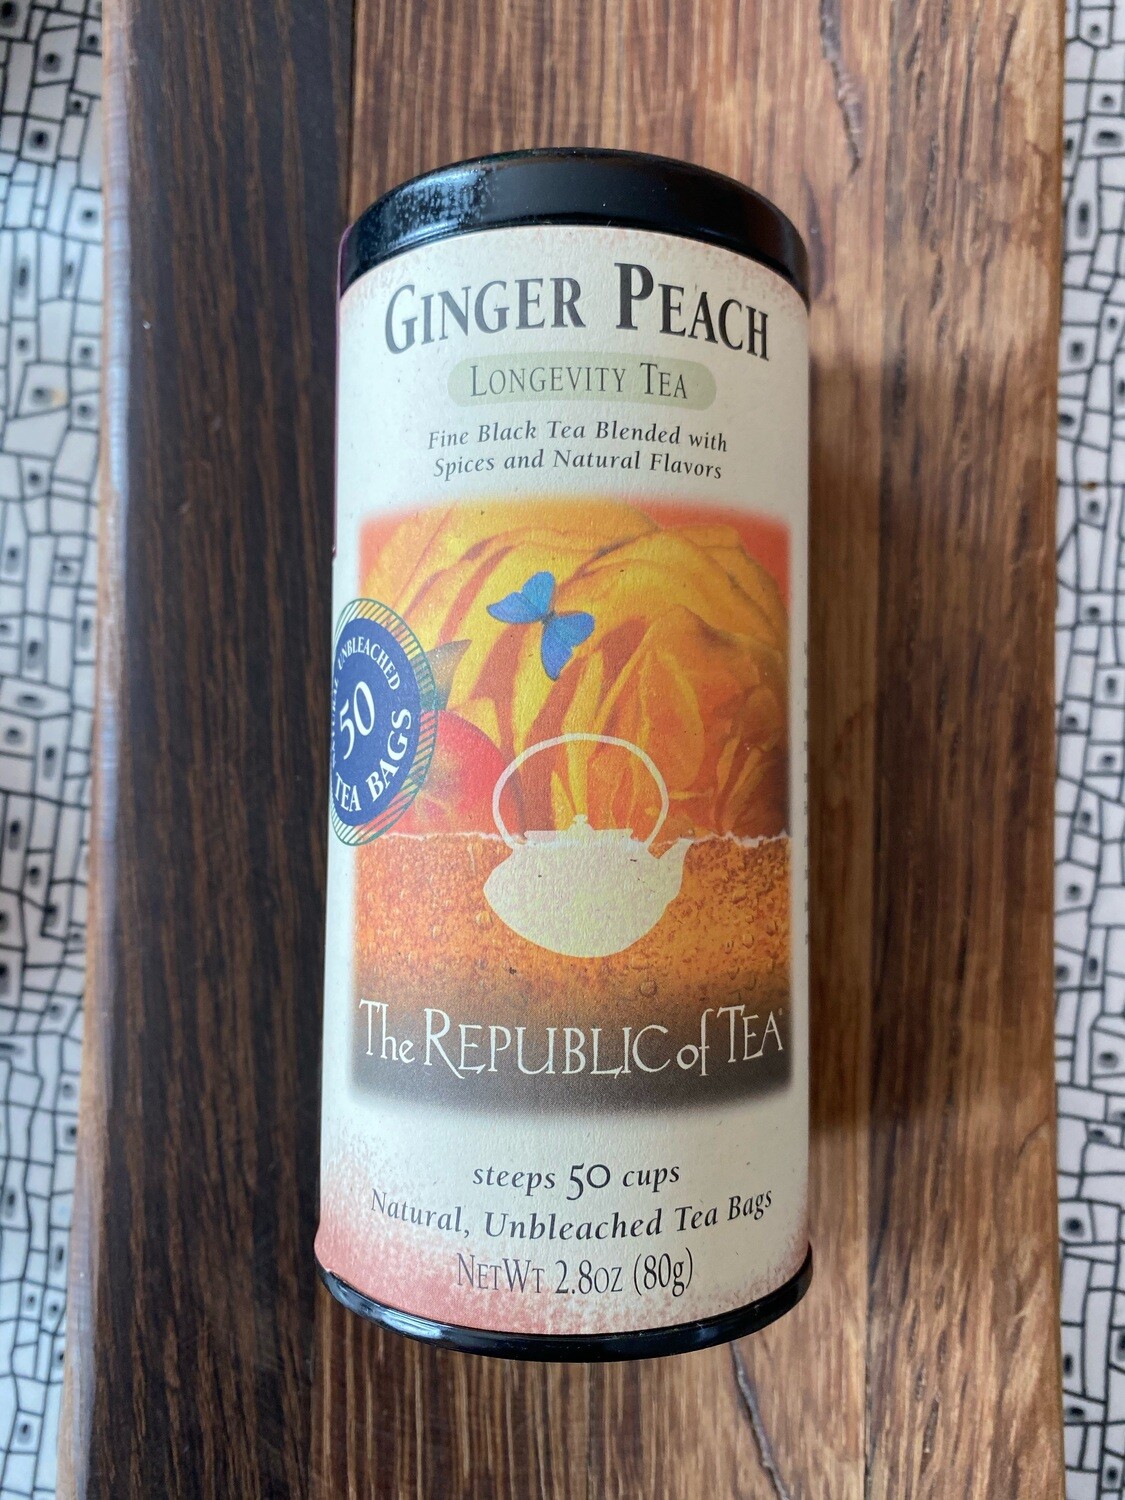 Ginger Peach Tea bags